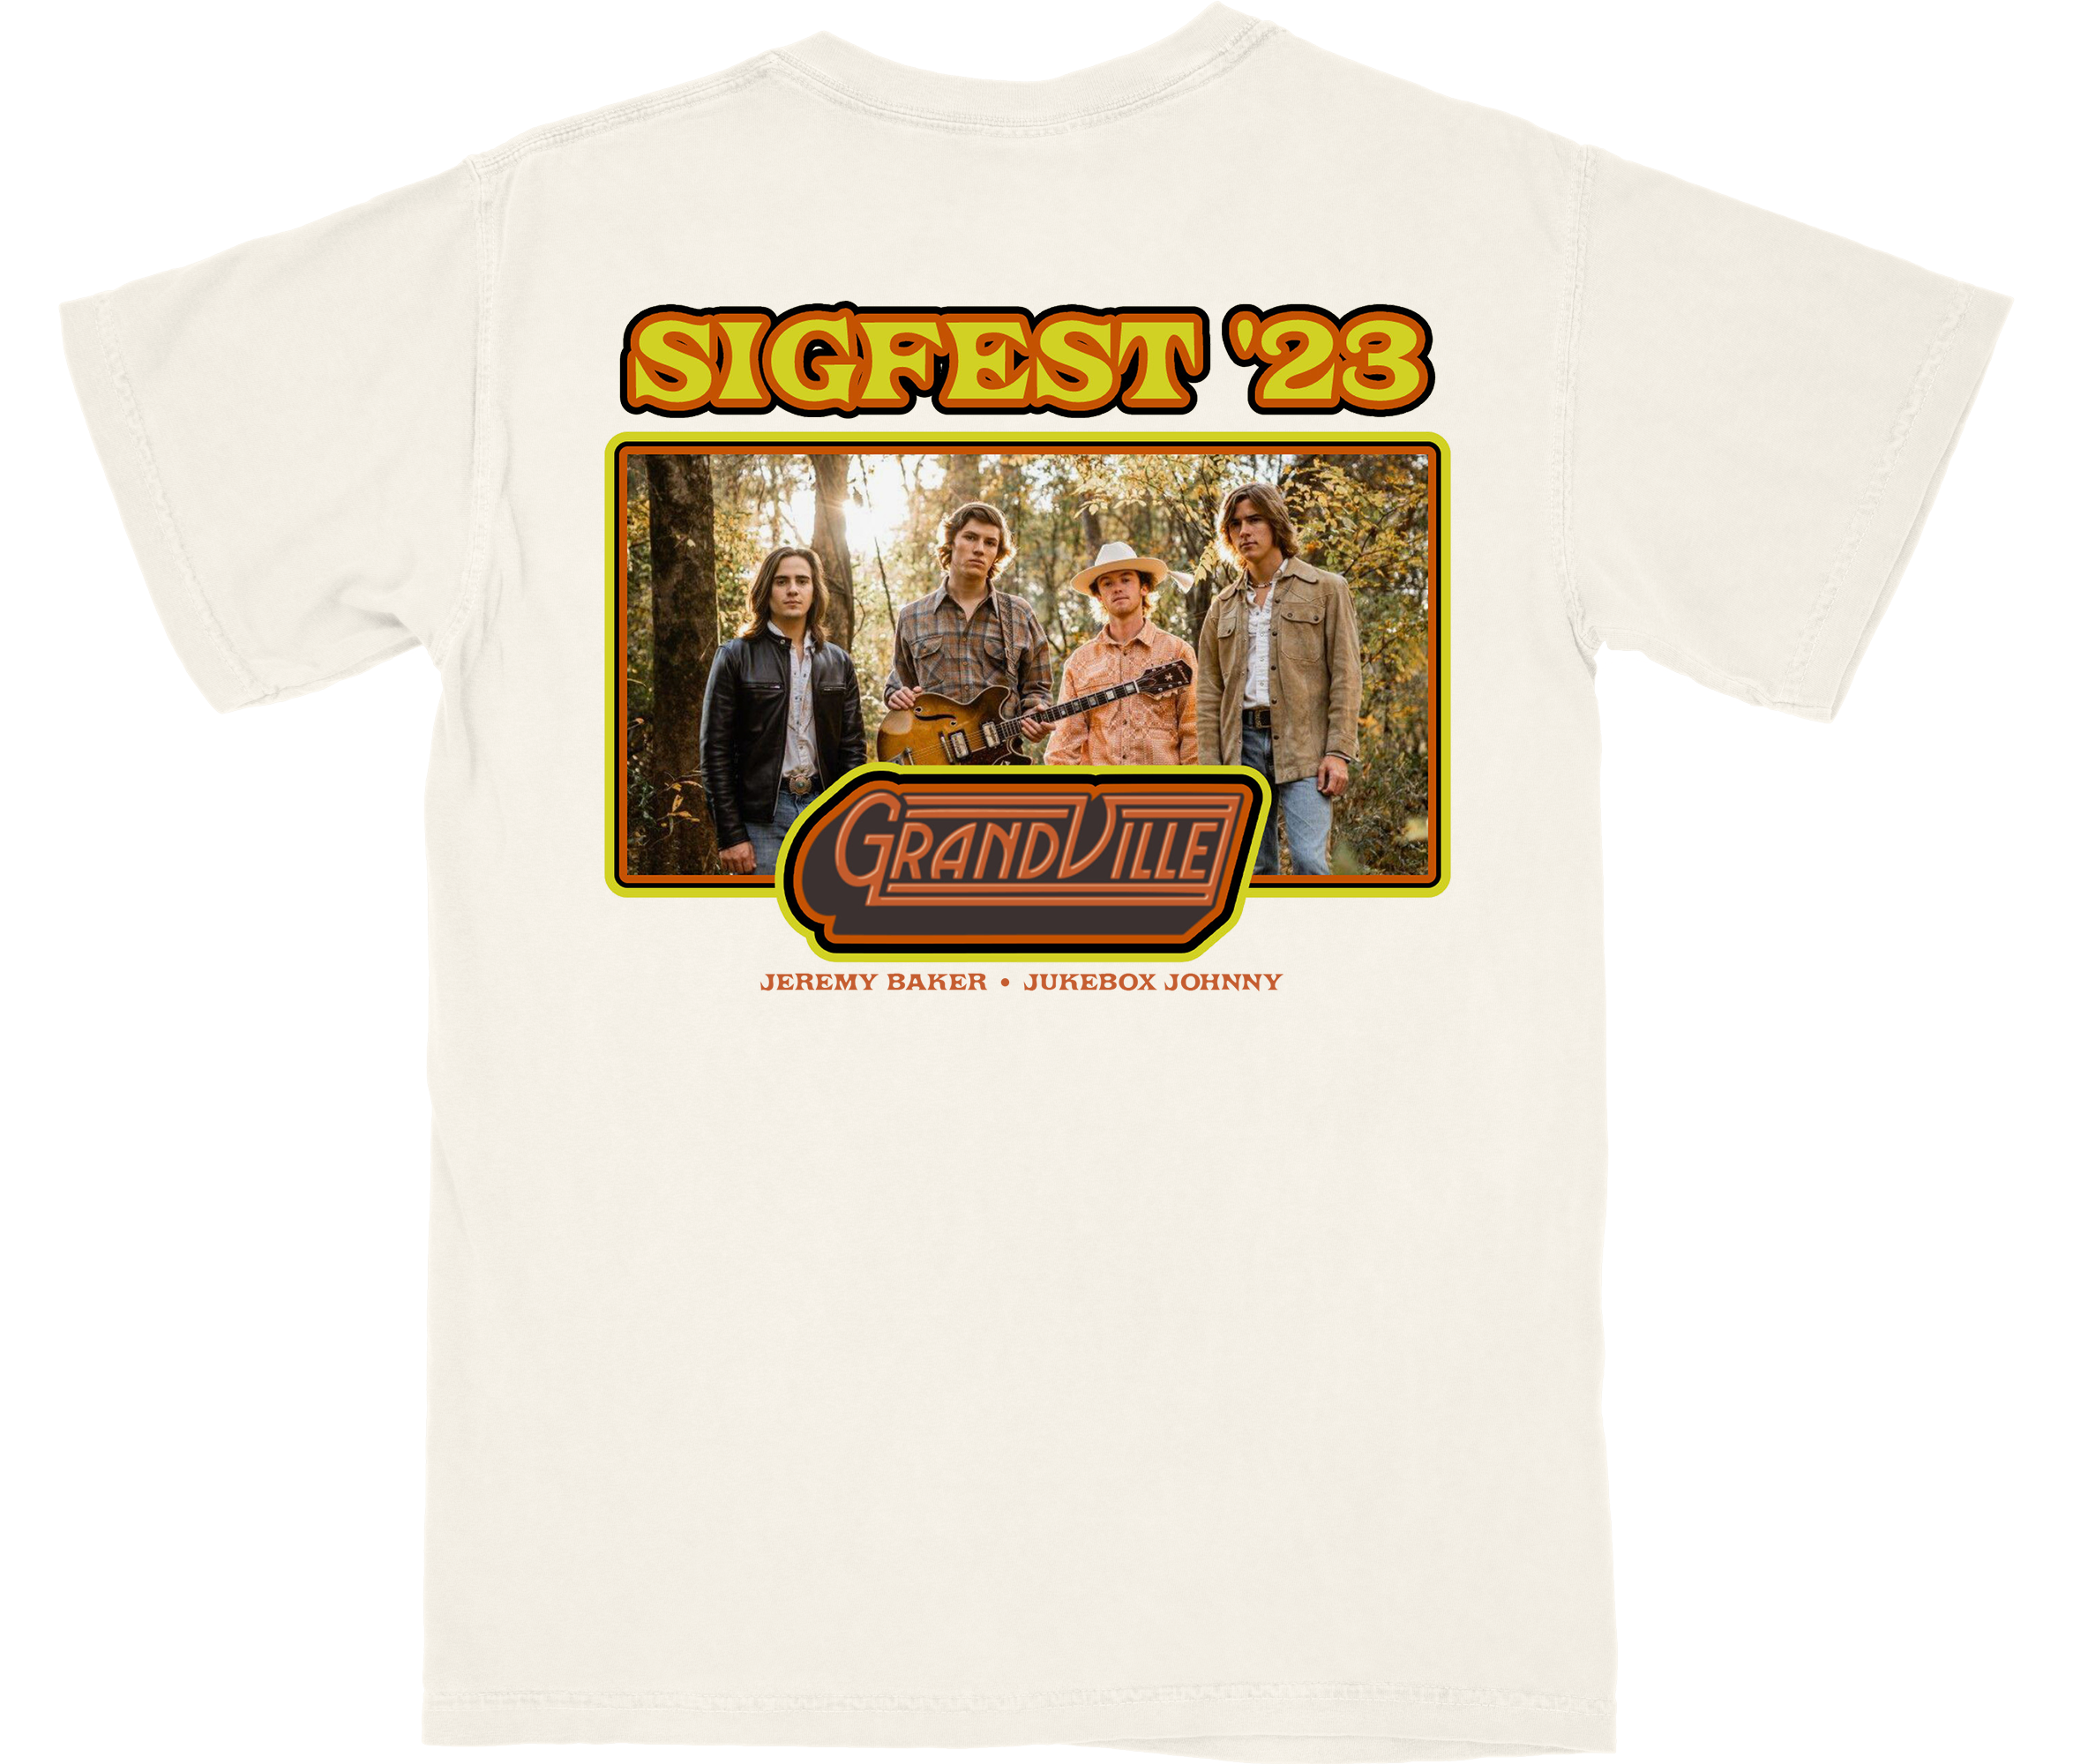 Sigfest Shirt